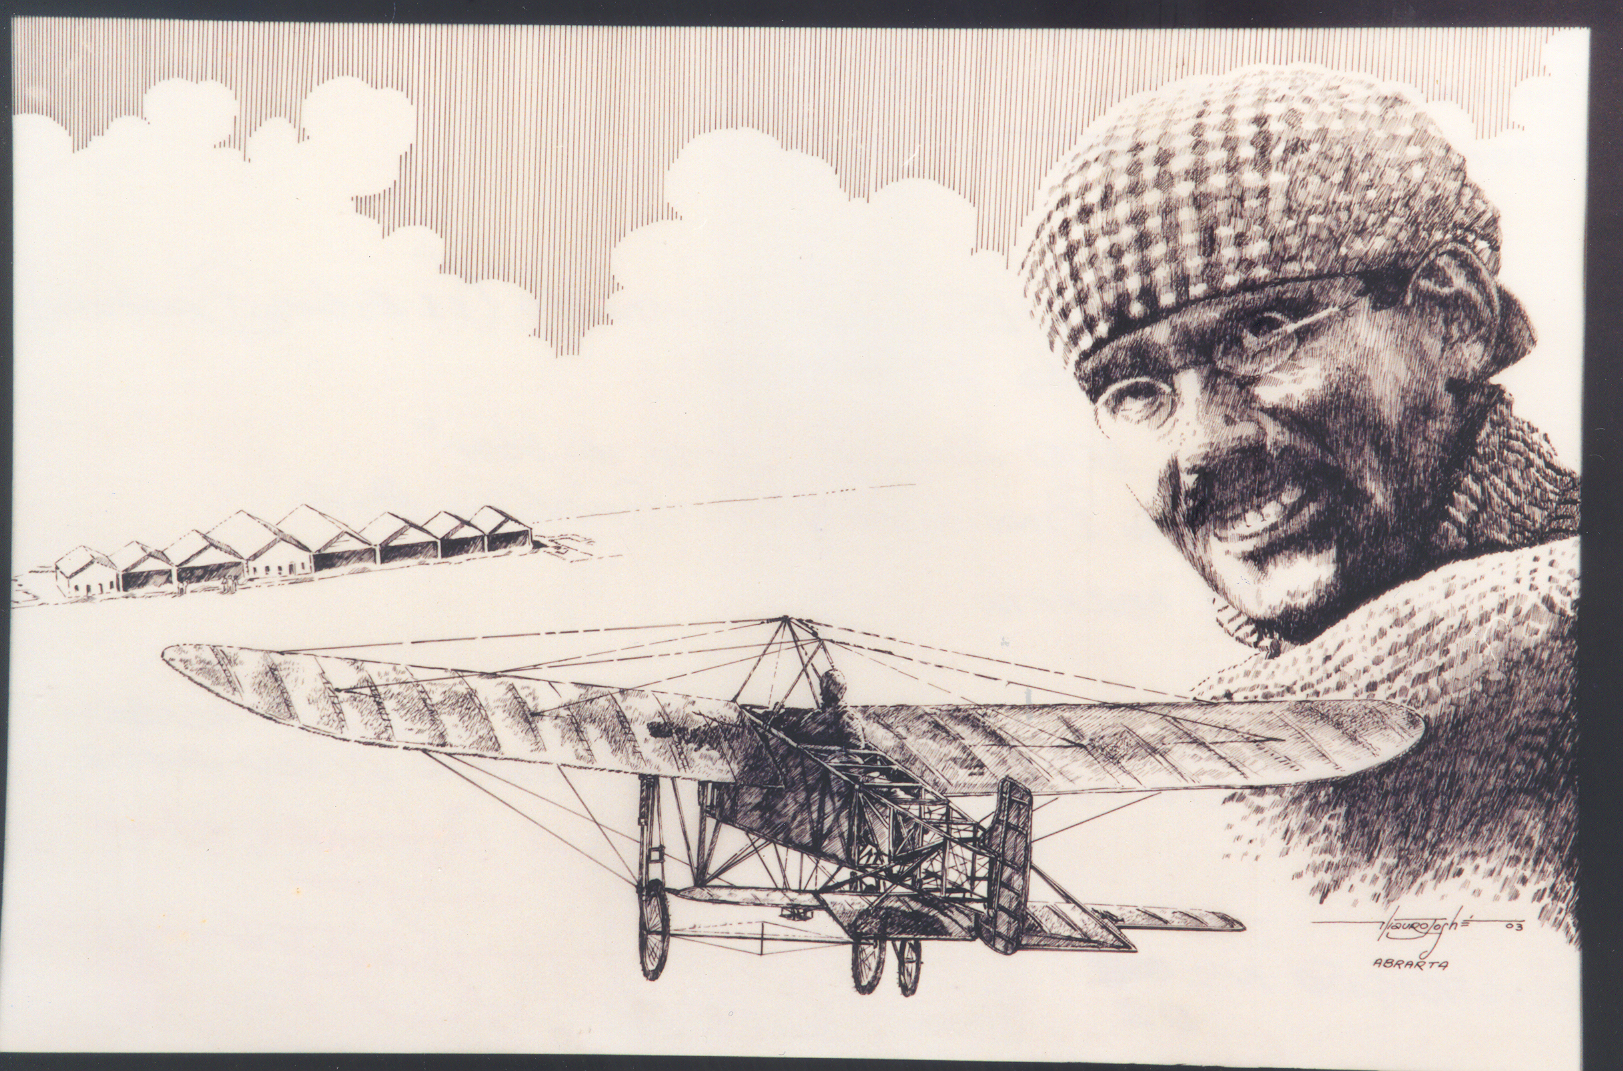 em 1912, o aviador Edu Chaves fez o primeiro voo entre São Paulo e Rio de Janeiro, tendo realizado pouso em Guaratinguetá